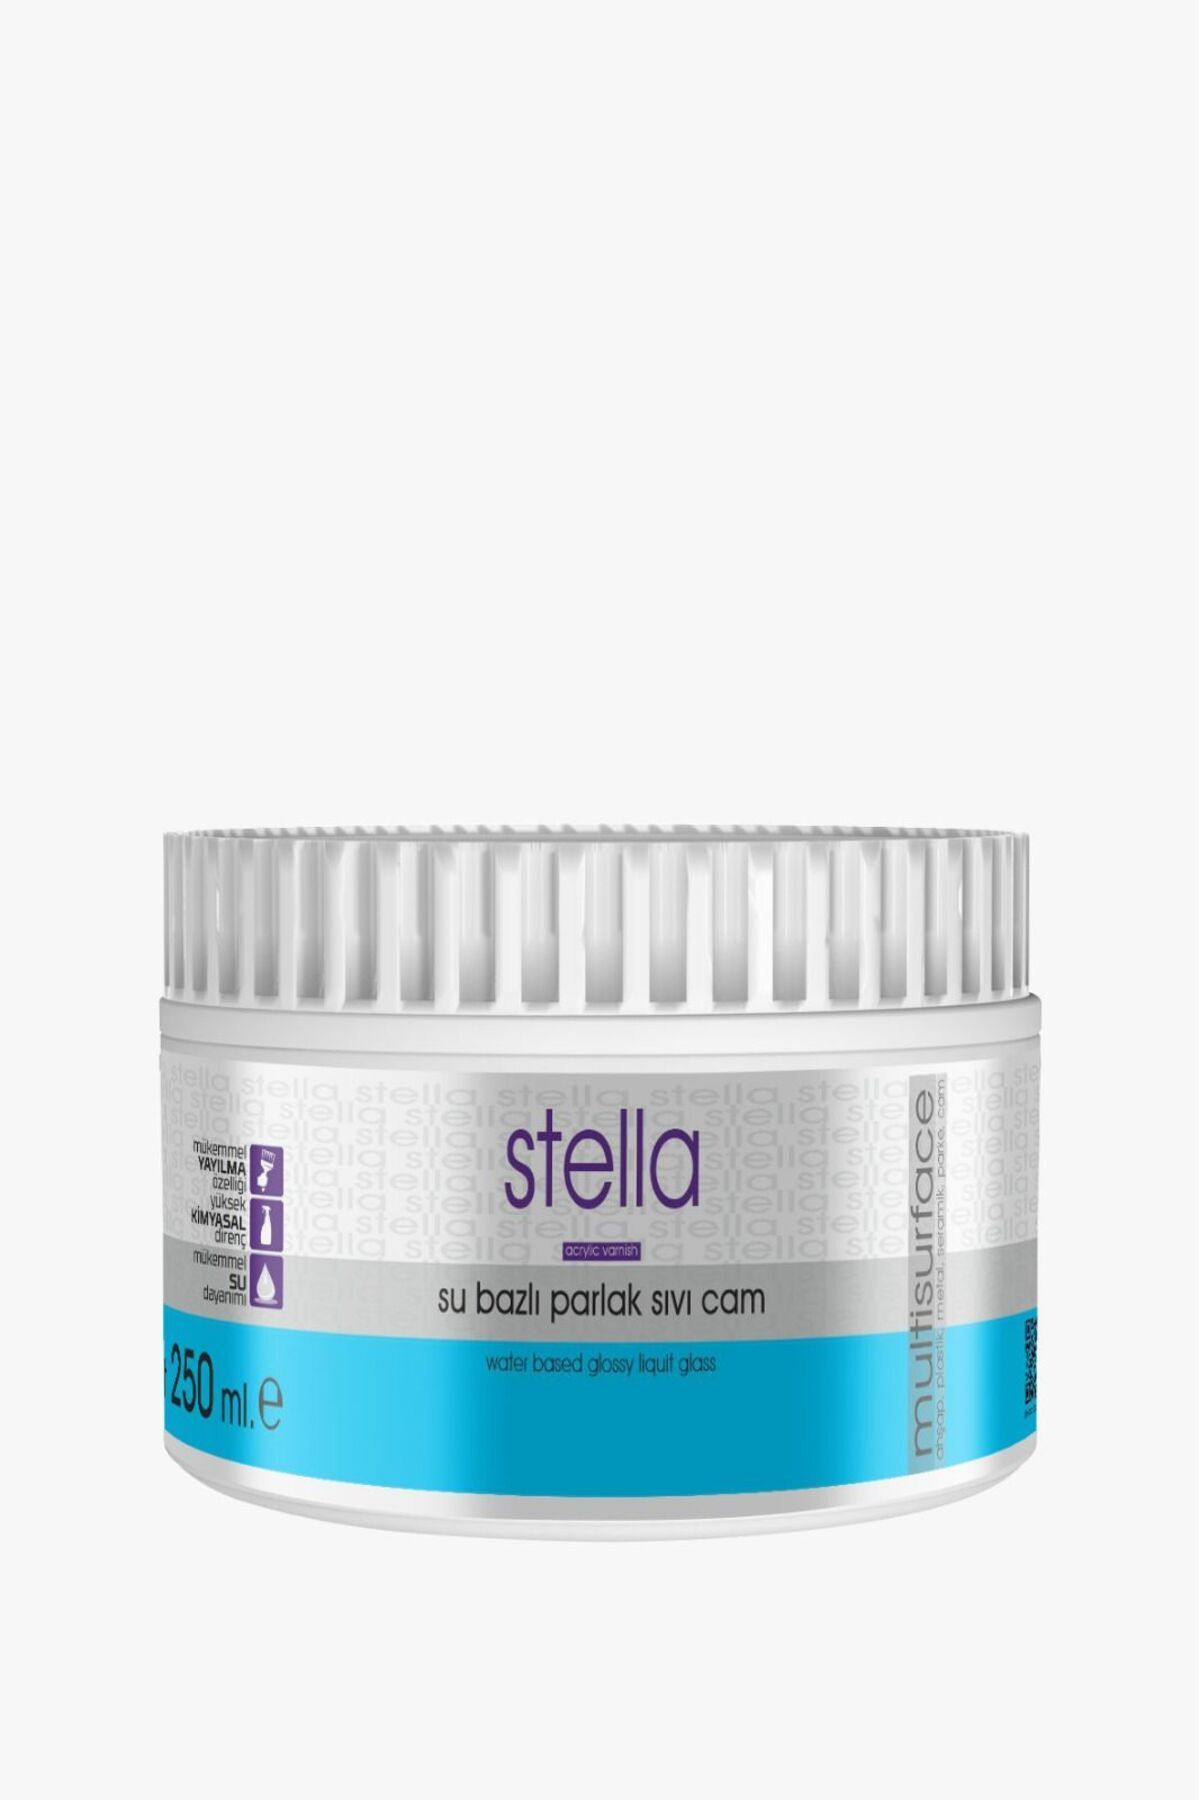 Stella Su Bazlı Sıvı Cam Parlak Boya Şeffaf 250 Ml